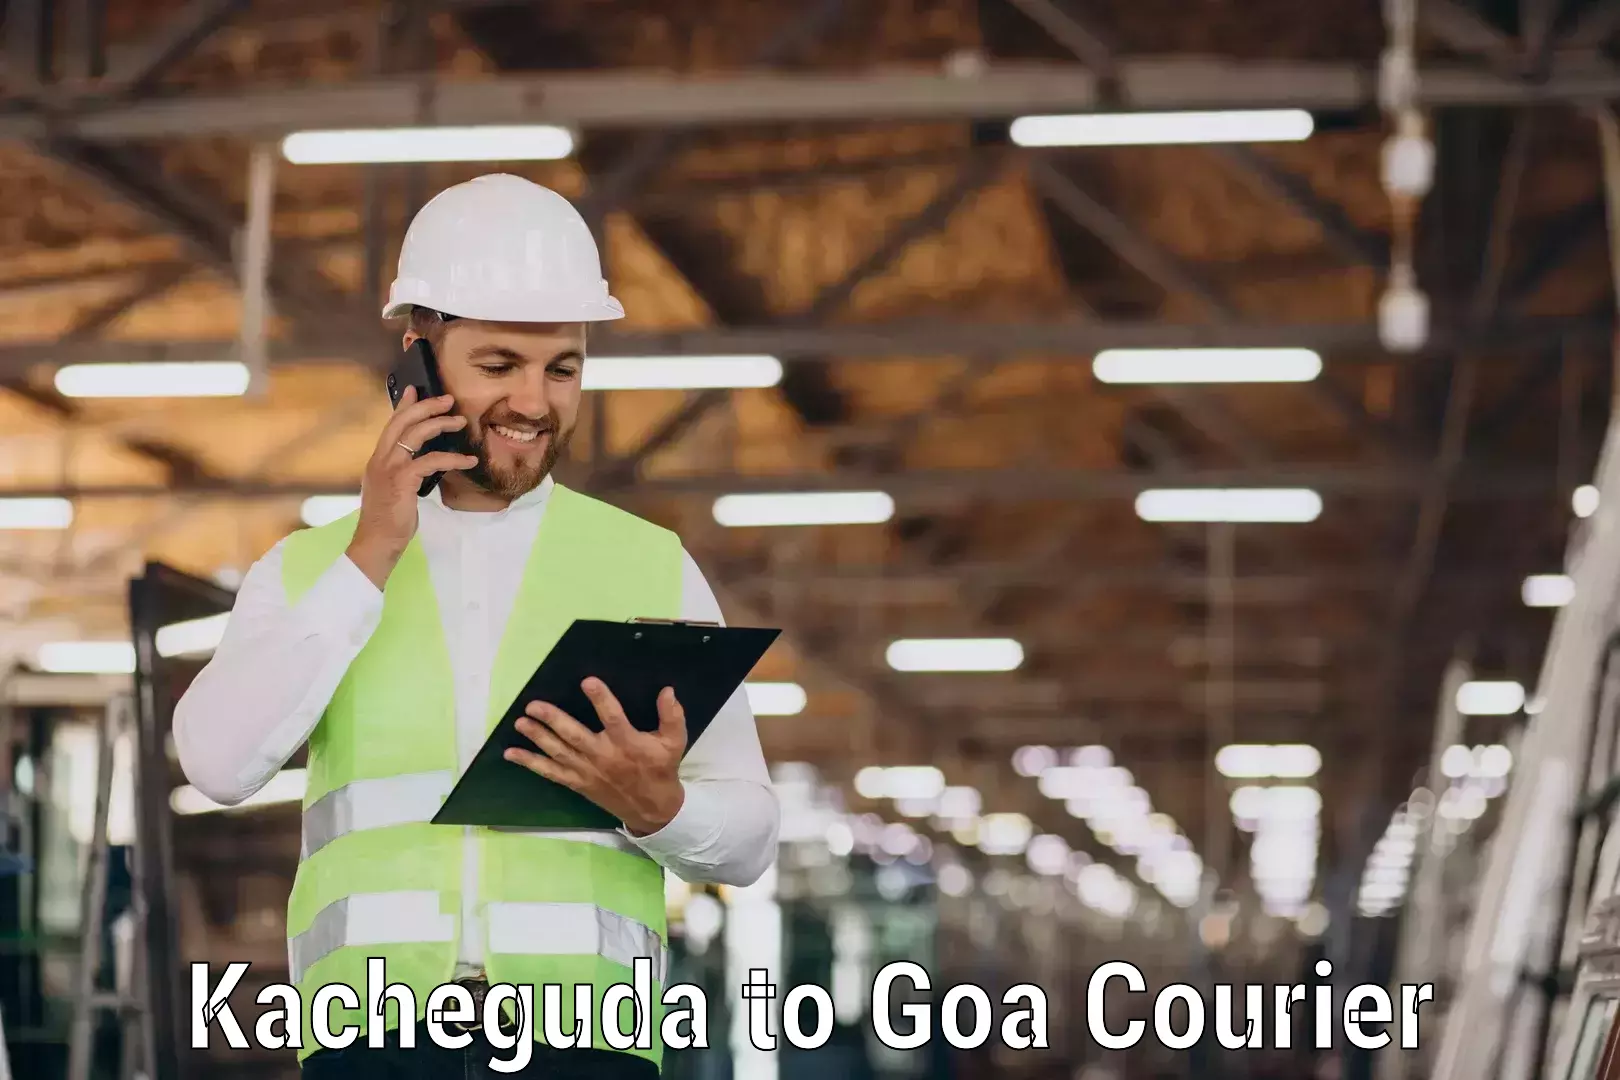 Cash on delivery service Kacheguda to Goa University